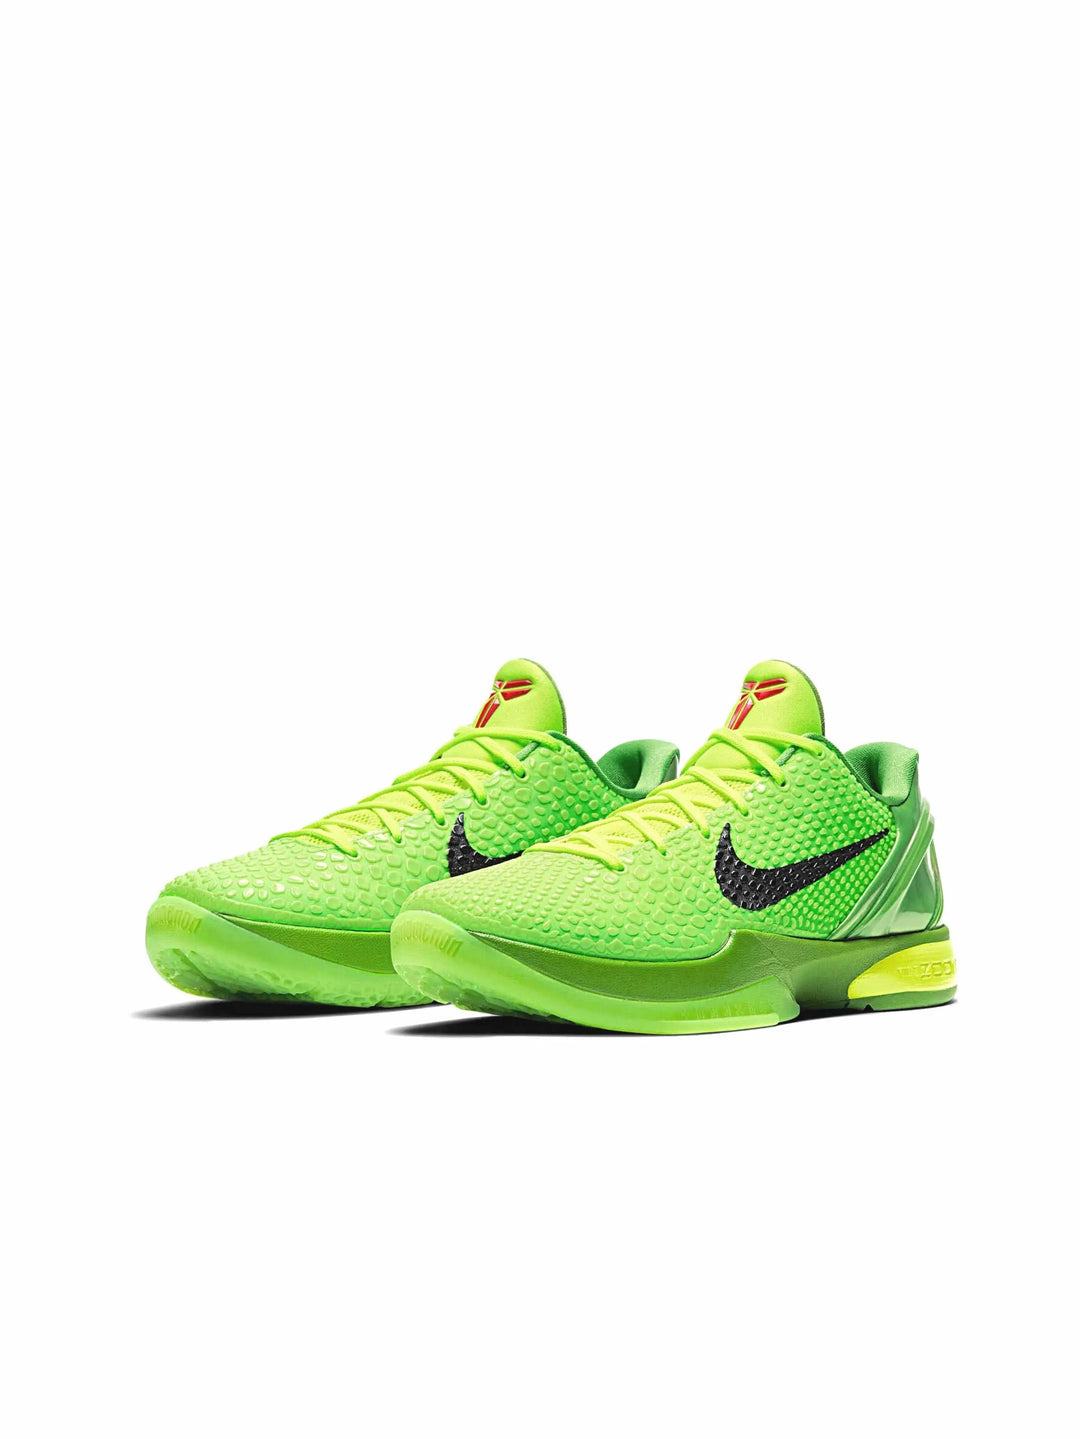 Nike Kobe 6 Protro Grinch (2020) in Melbourne, Australia - Prior